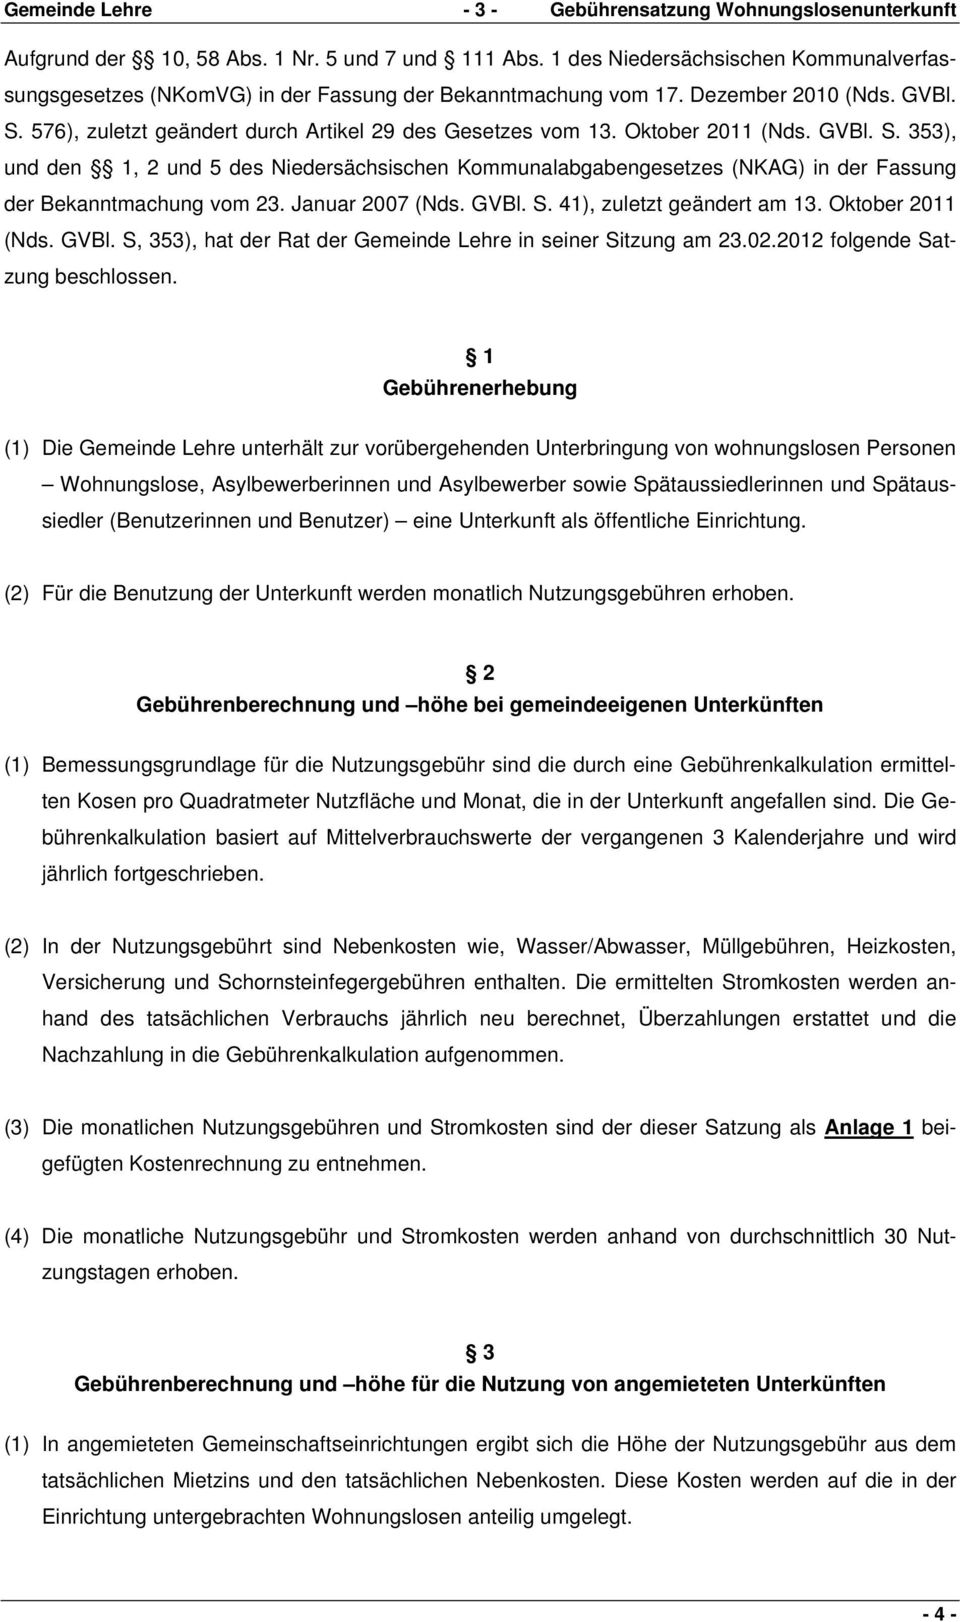 Oktober 2011 (Nds. GVBl. S. 353), und den 1, 2 und 5 des Niedersächsischen Kommunalabgabengesetzes (NKAG) in der Fassung der Bekanntmachung vom 23. Januar 2007 (Nds. GVBl. S. 41), zuletzt geändert am 13.